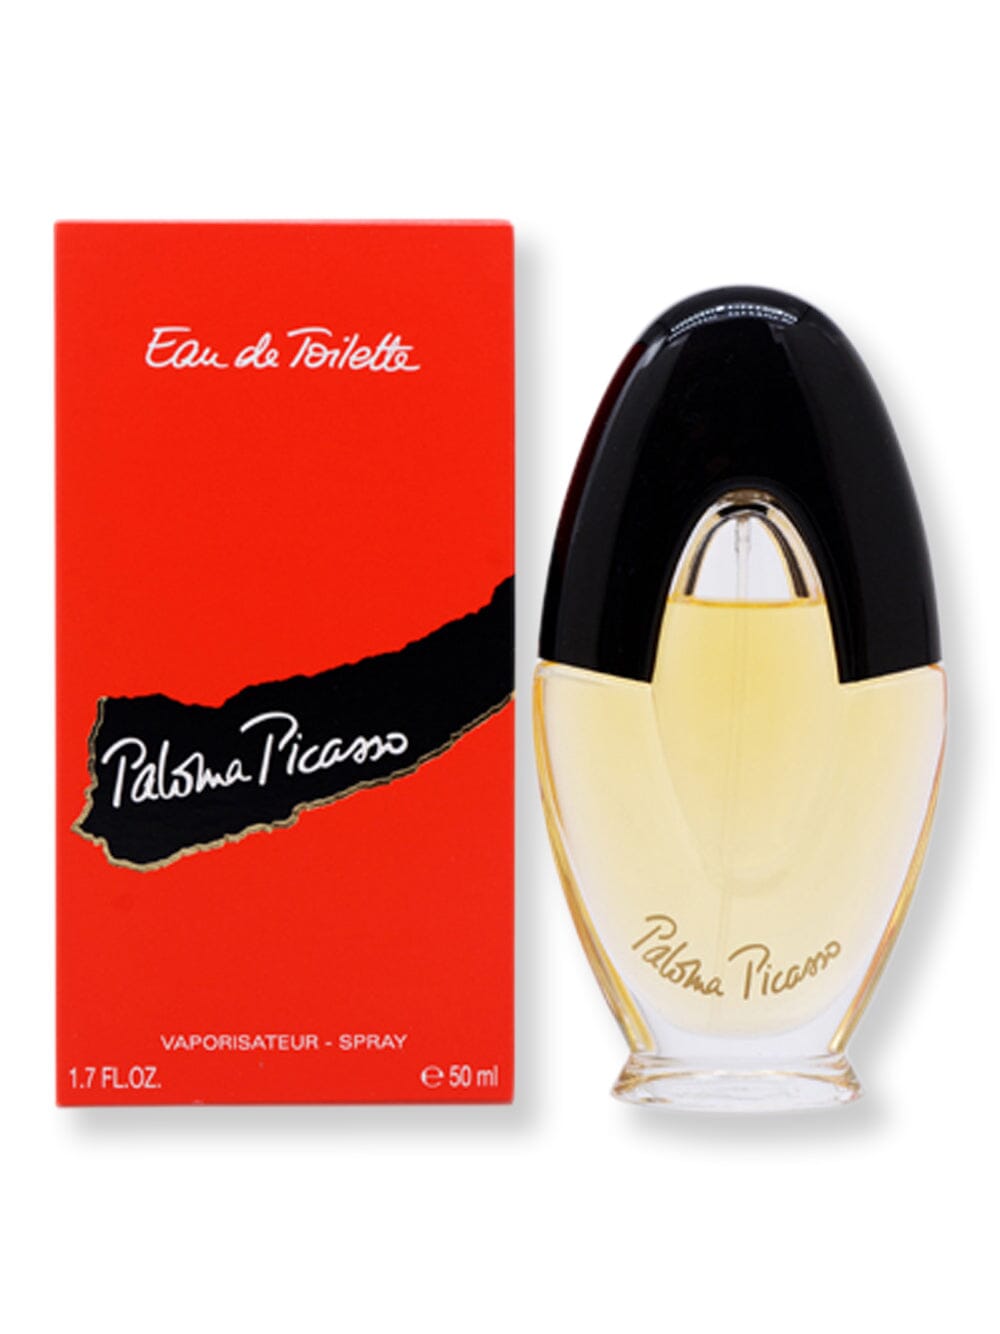 Paloma Picasso Paloma Picasso EDT Spray 1.7 oz Perfume 